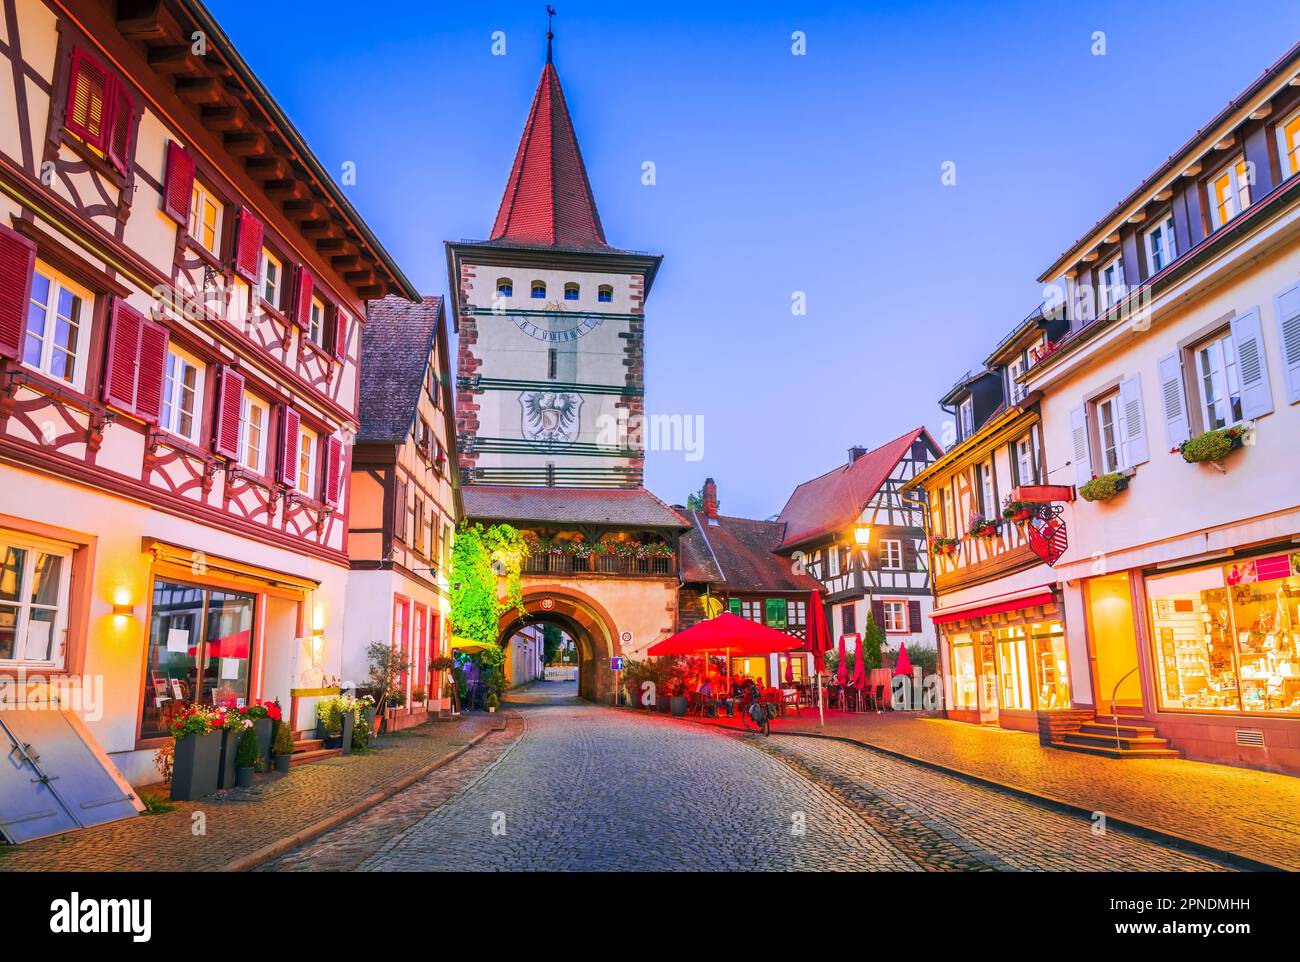 Gengenbach è una pittoresca cittadina nella regione della Foresta Nera in Germania, nota per i suoi edifici storici ben conservati e l'affascinante stre acciottolato Foto Stock